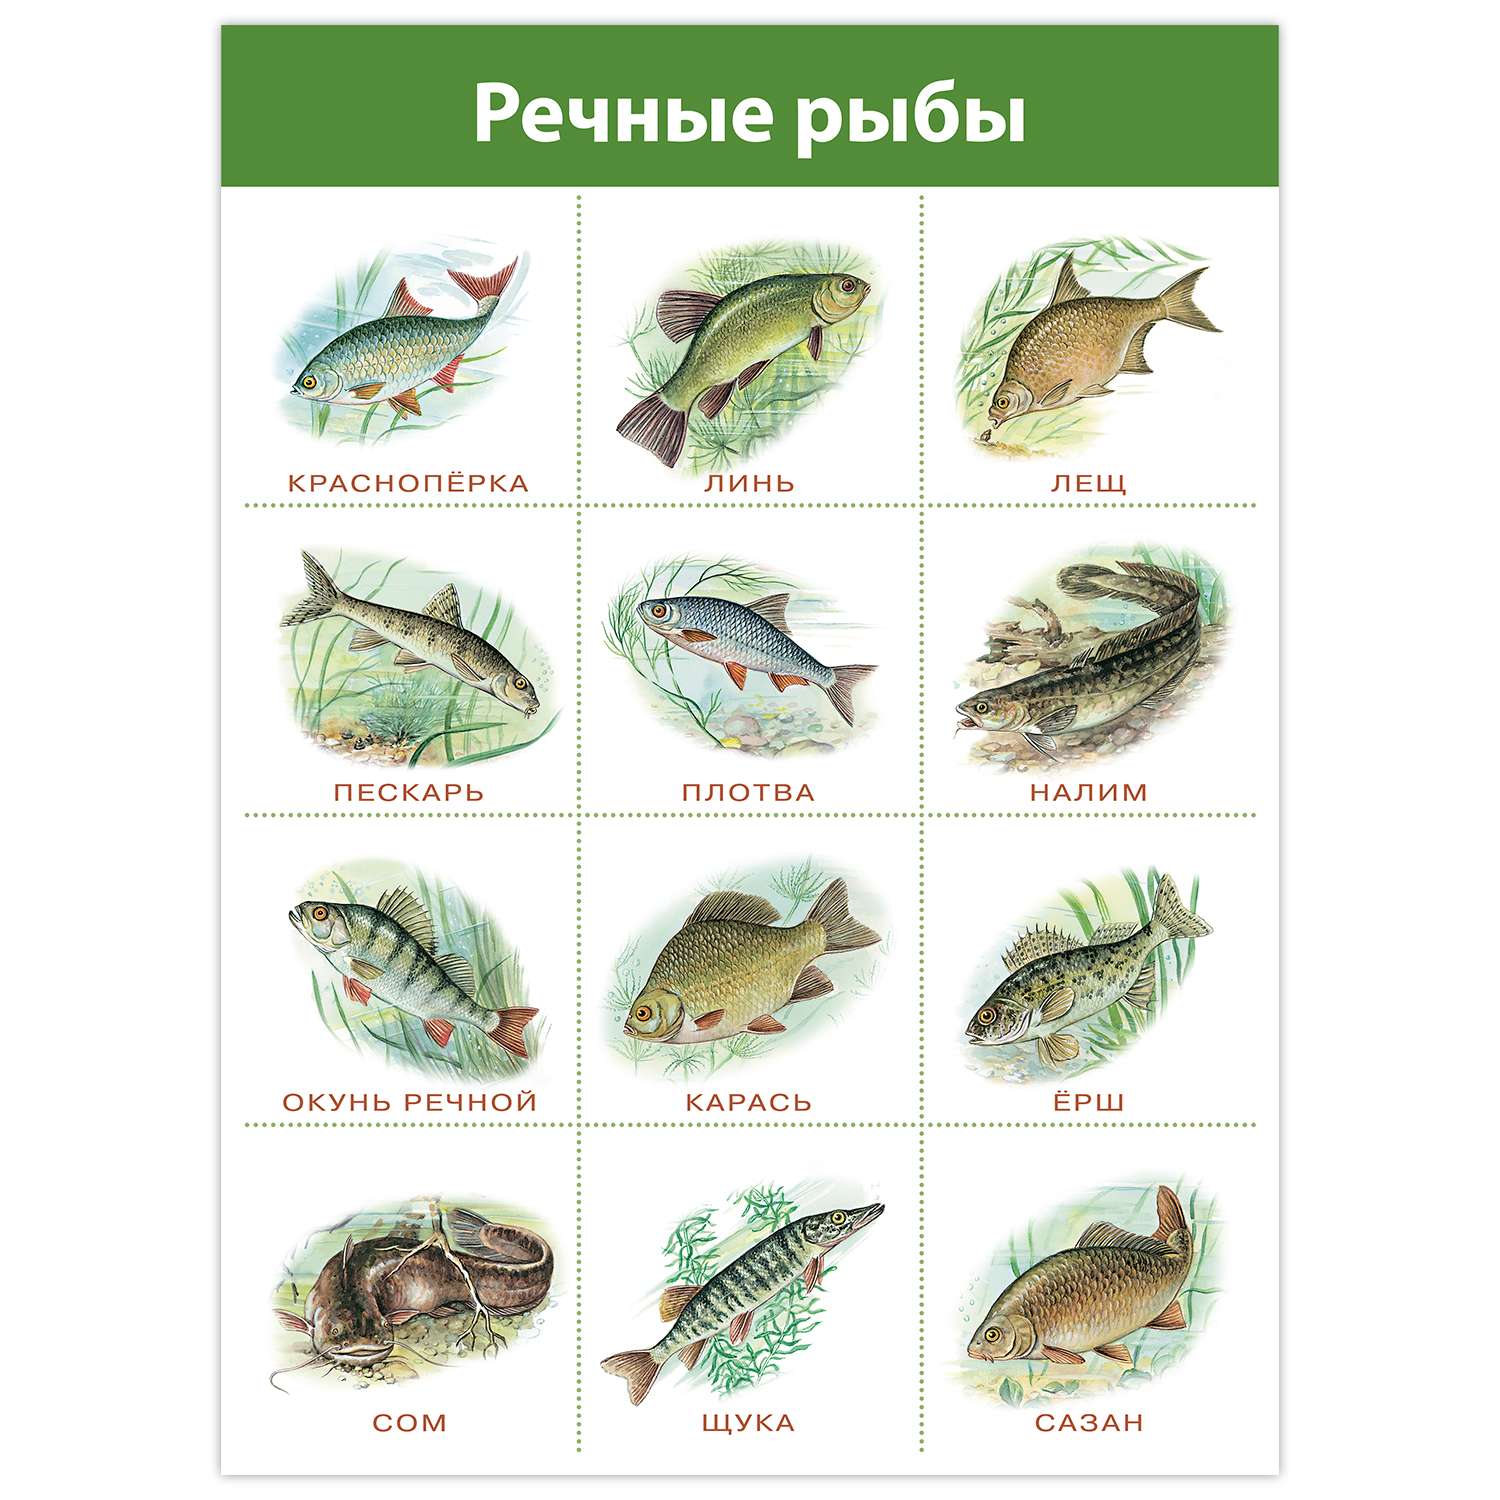 речные рыбы картинки для детей с названиями